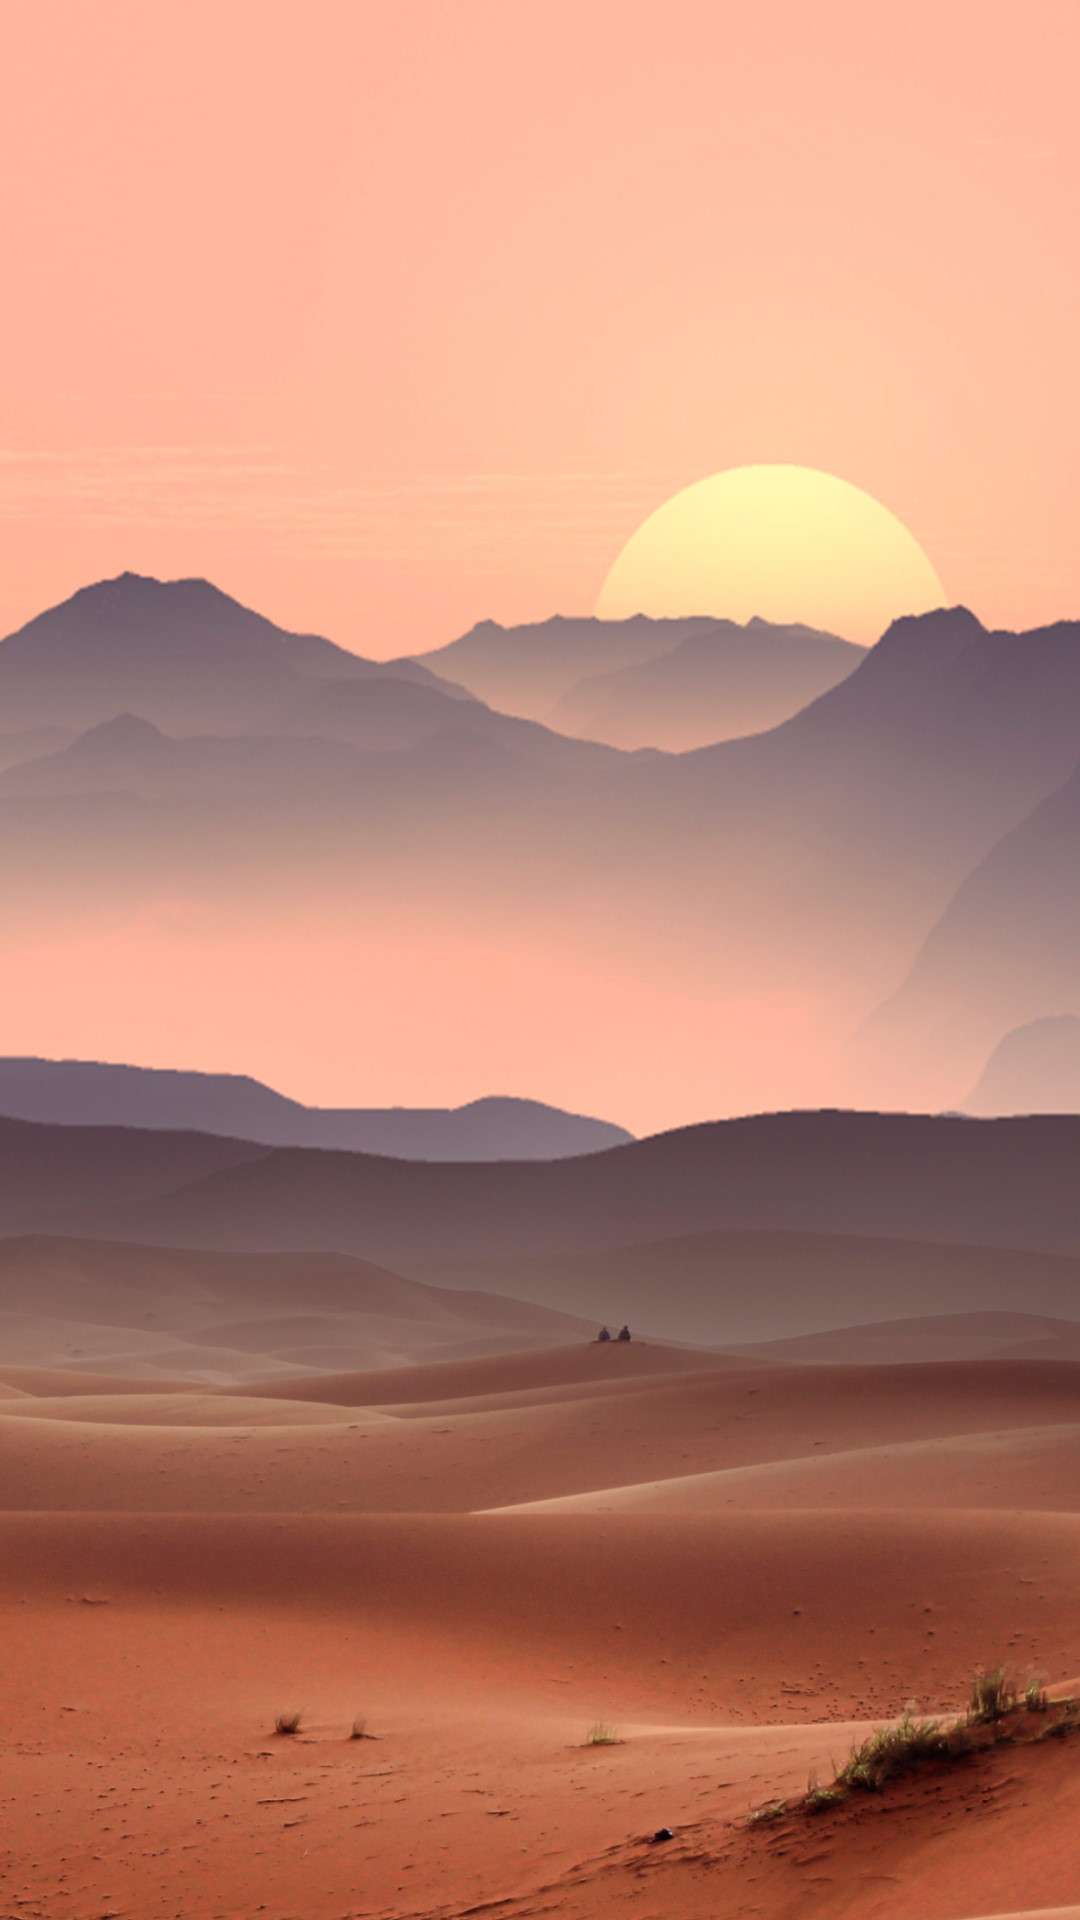 Sunset on the desert dunes wallpaper 1080x1920